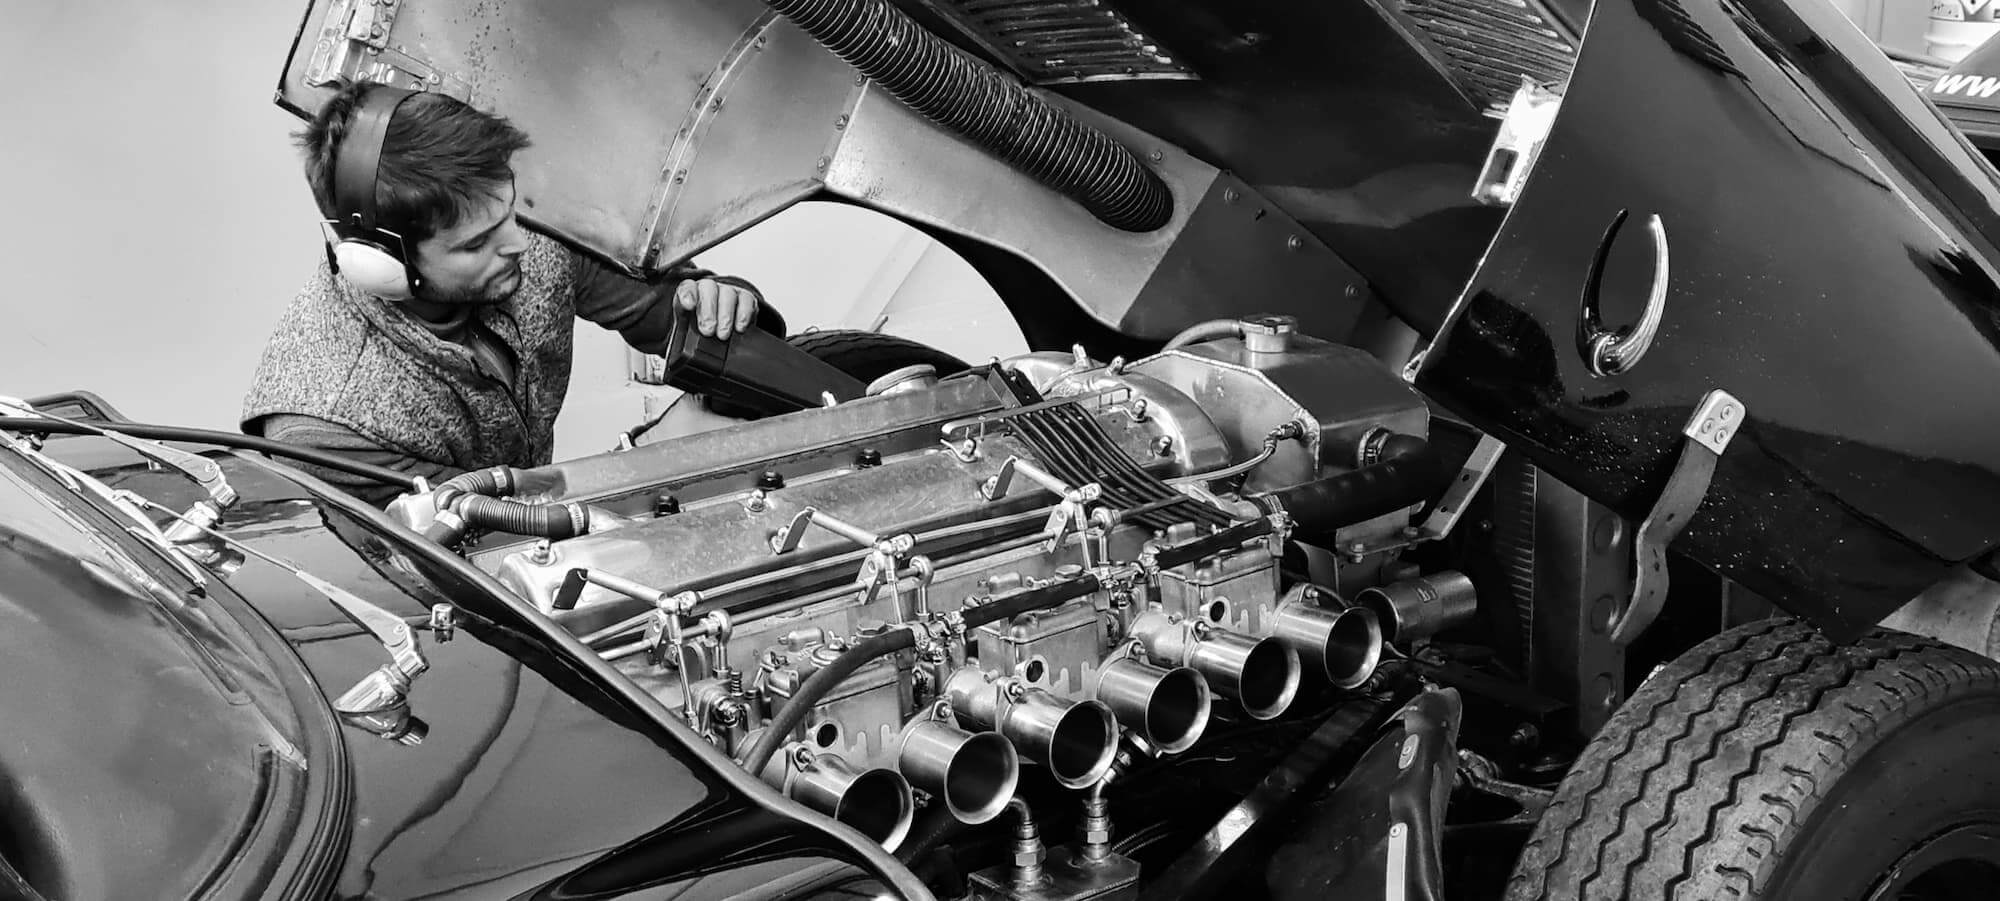 Garage des Damiers - Banc de puissance - Rotronics - Reglage moteur - Historic racing - British racing - Classic cars - Jaguar Type E